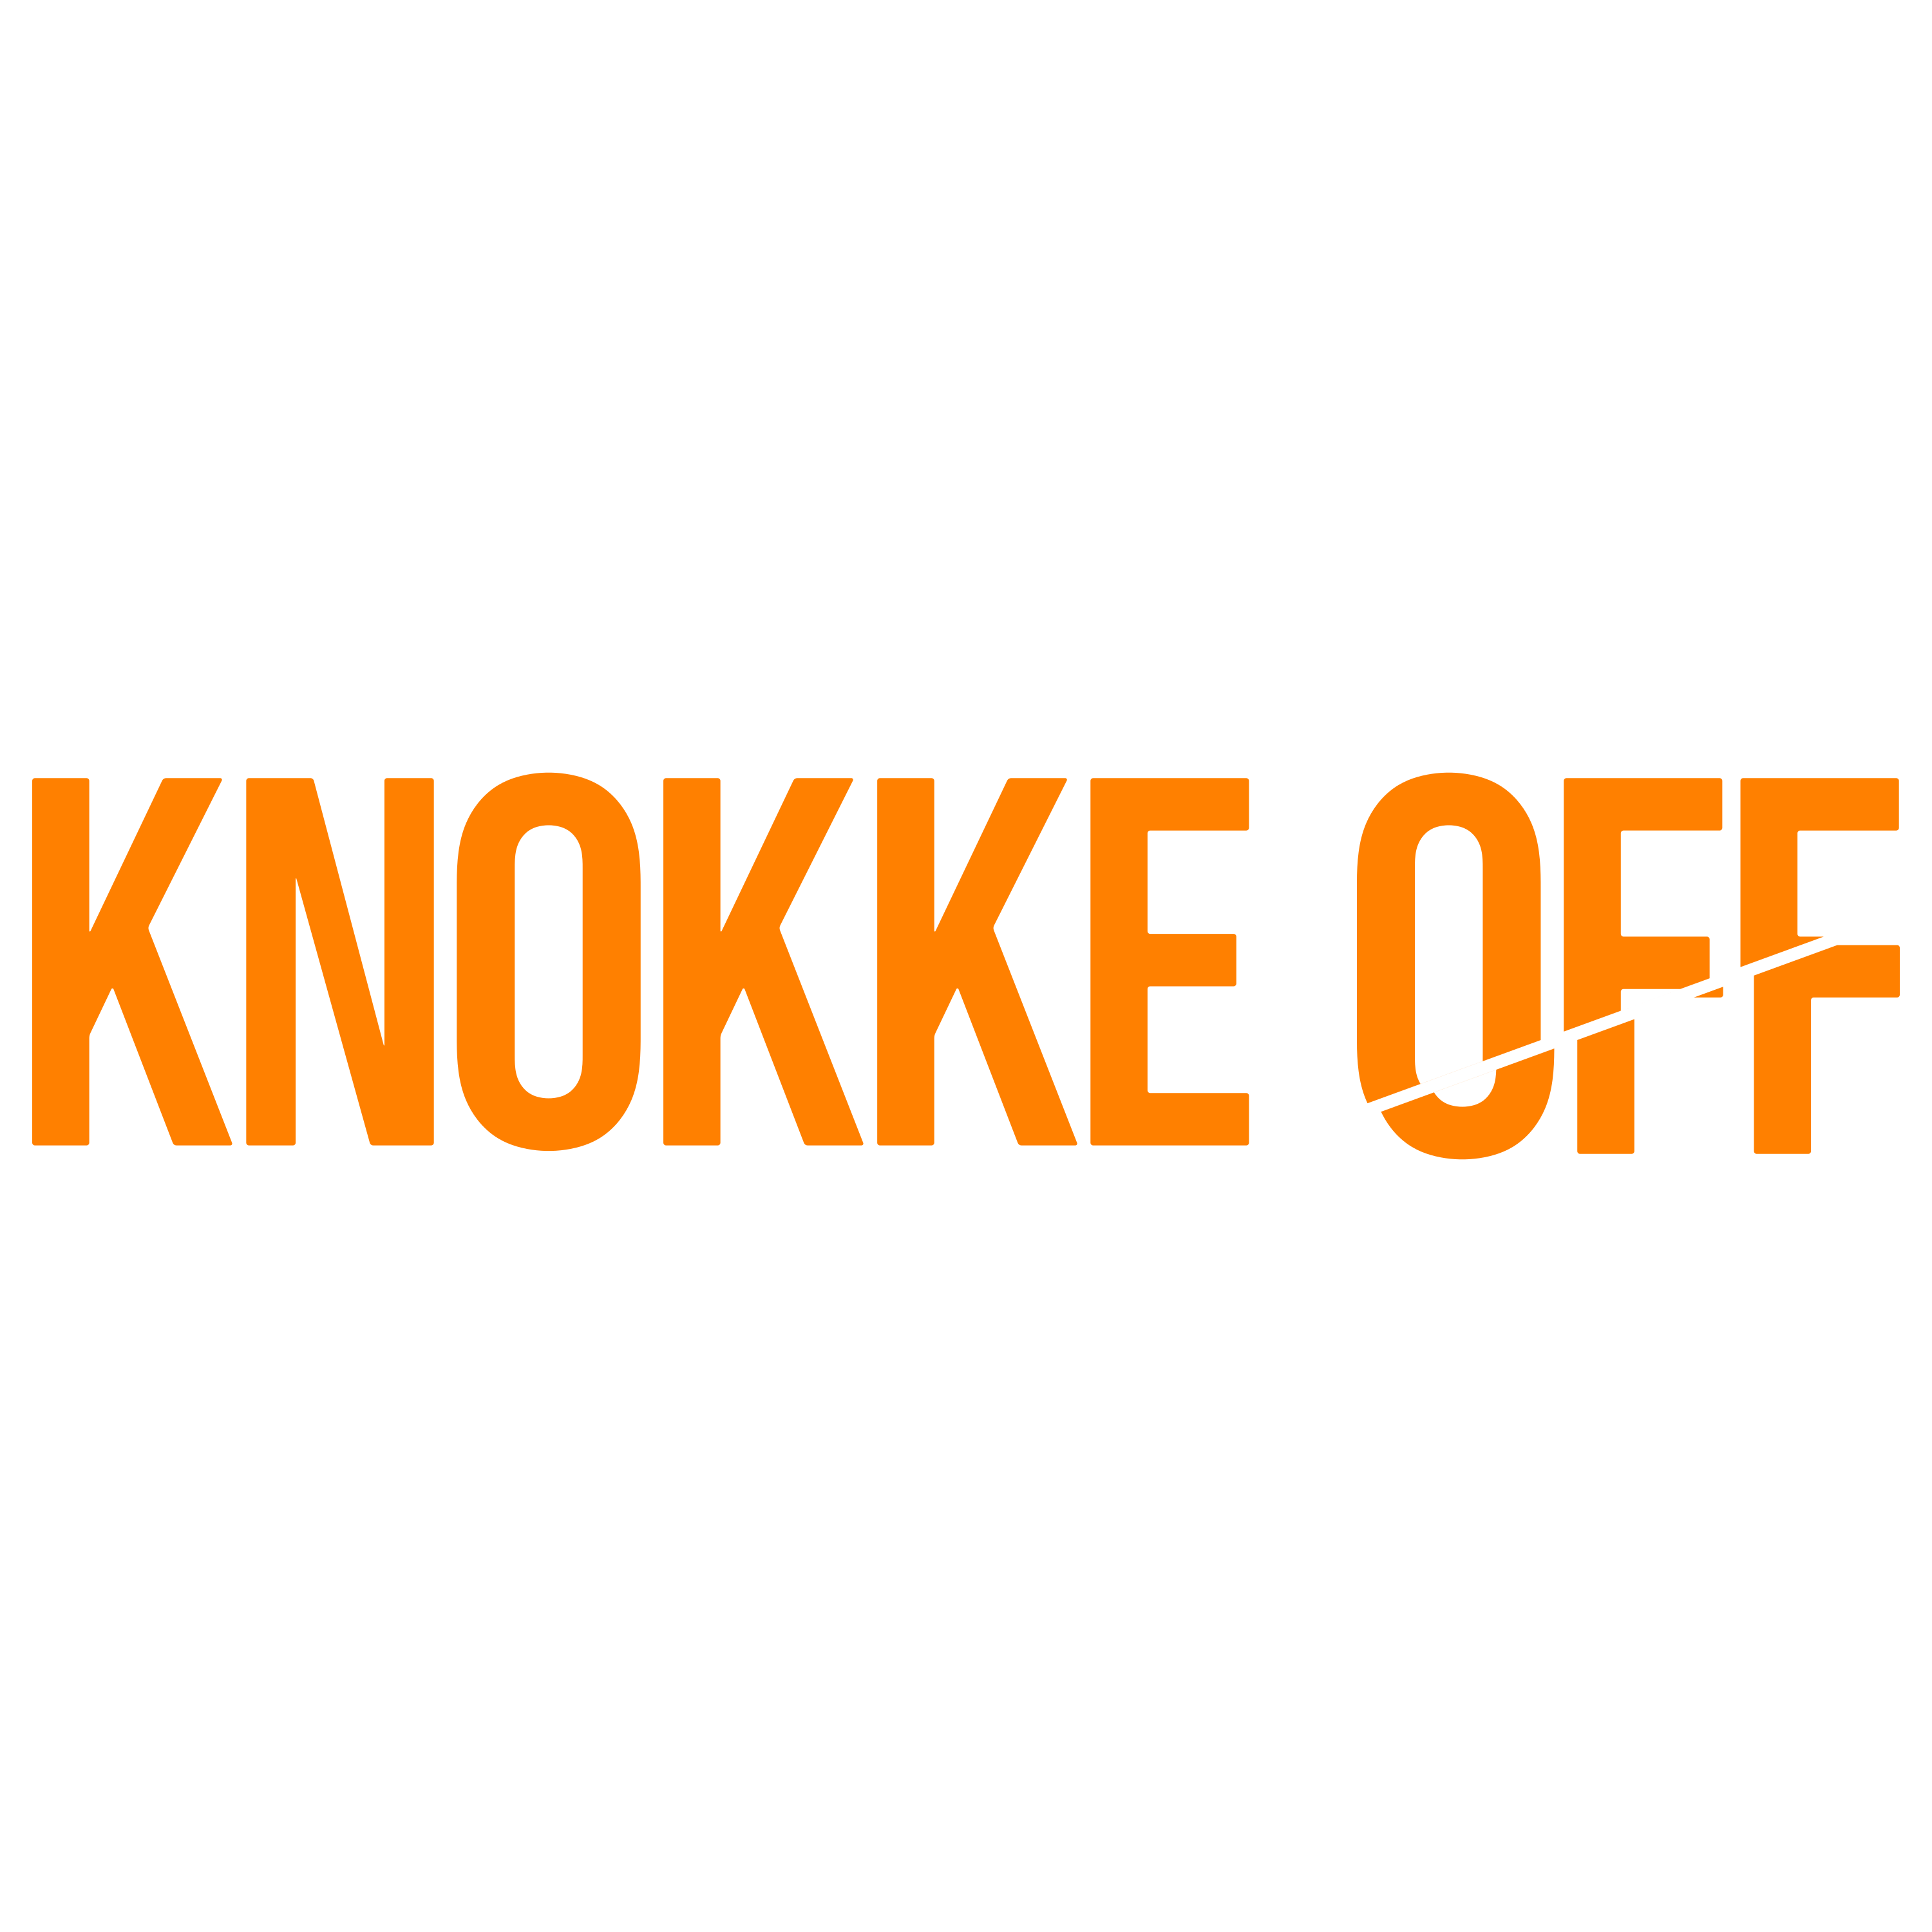 Knokke Logo  Transparent Gallery